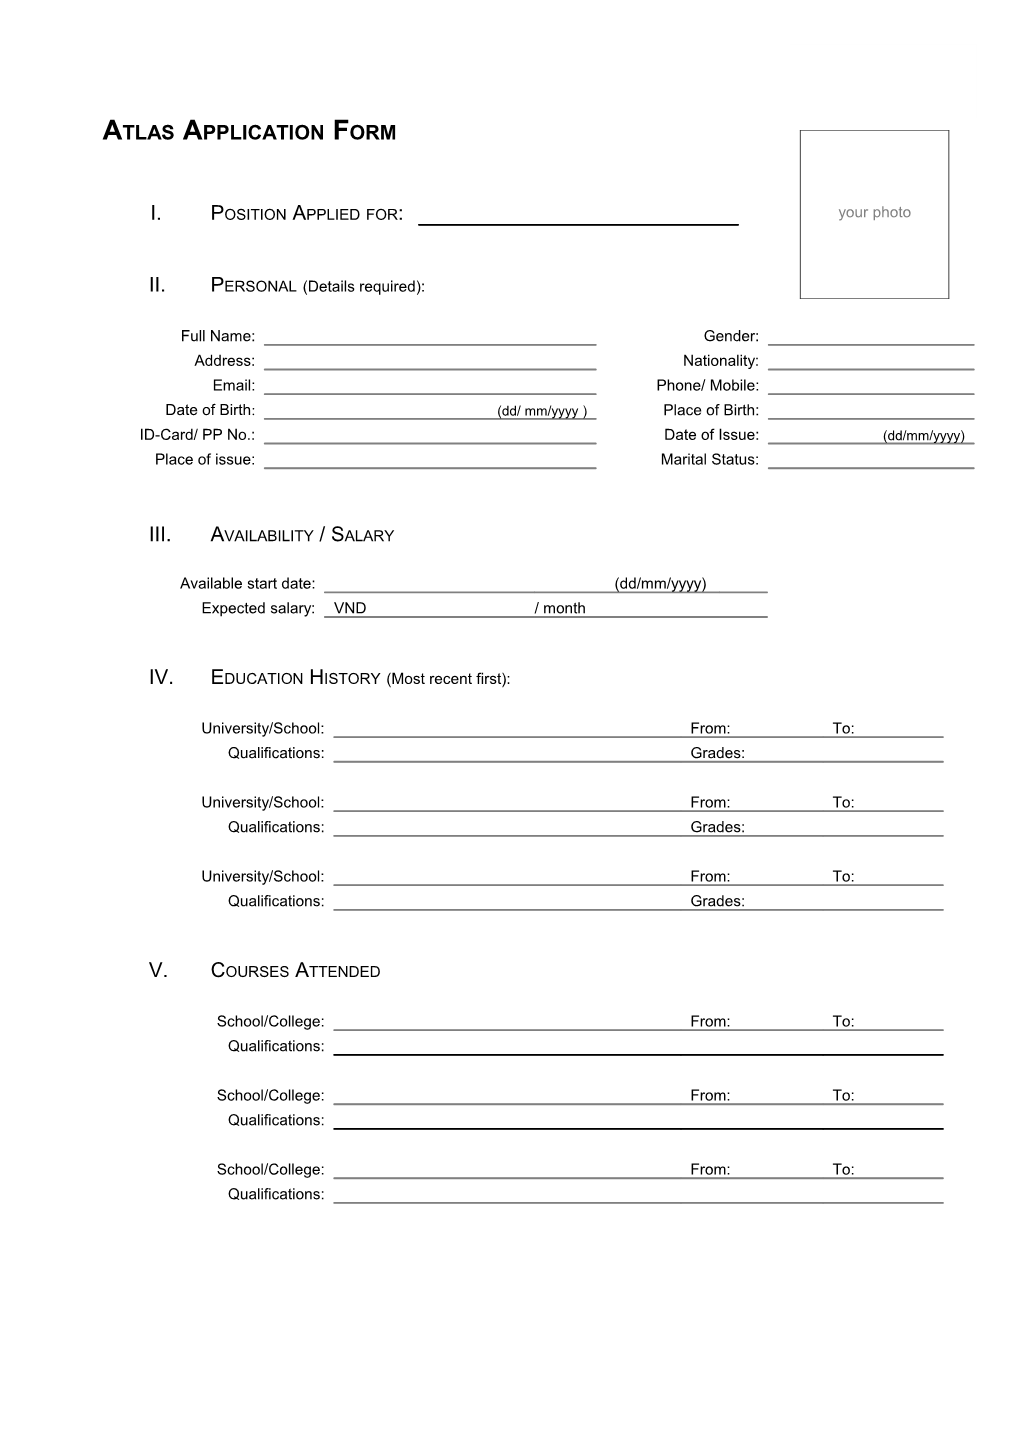 Atlas Application Form